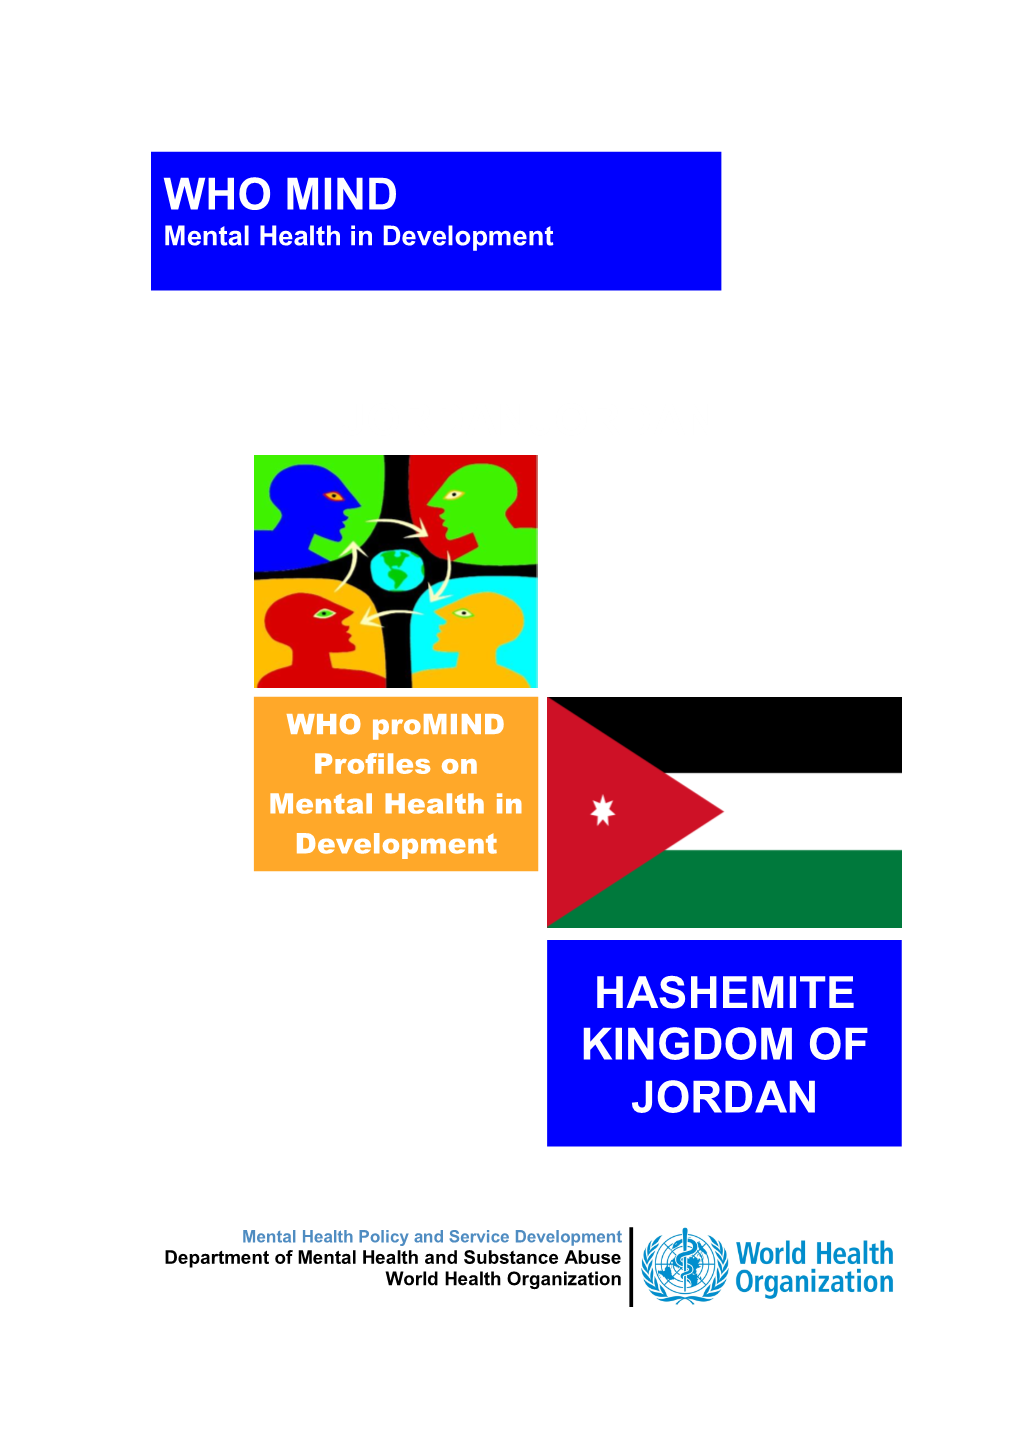 Hashemite Kingdom of Jordan Jordanjordan